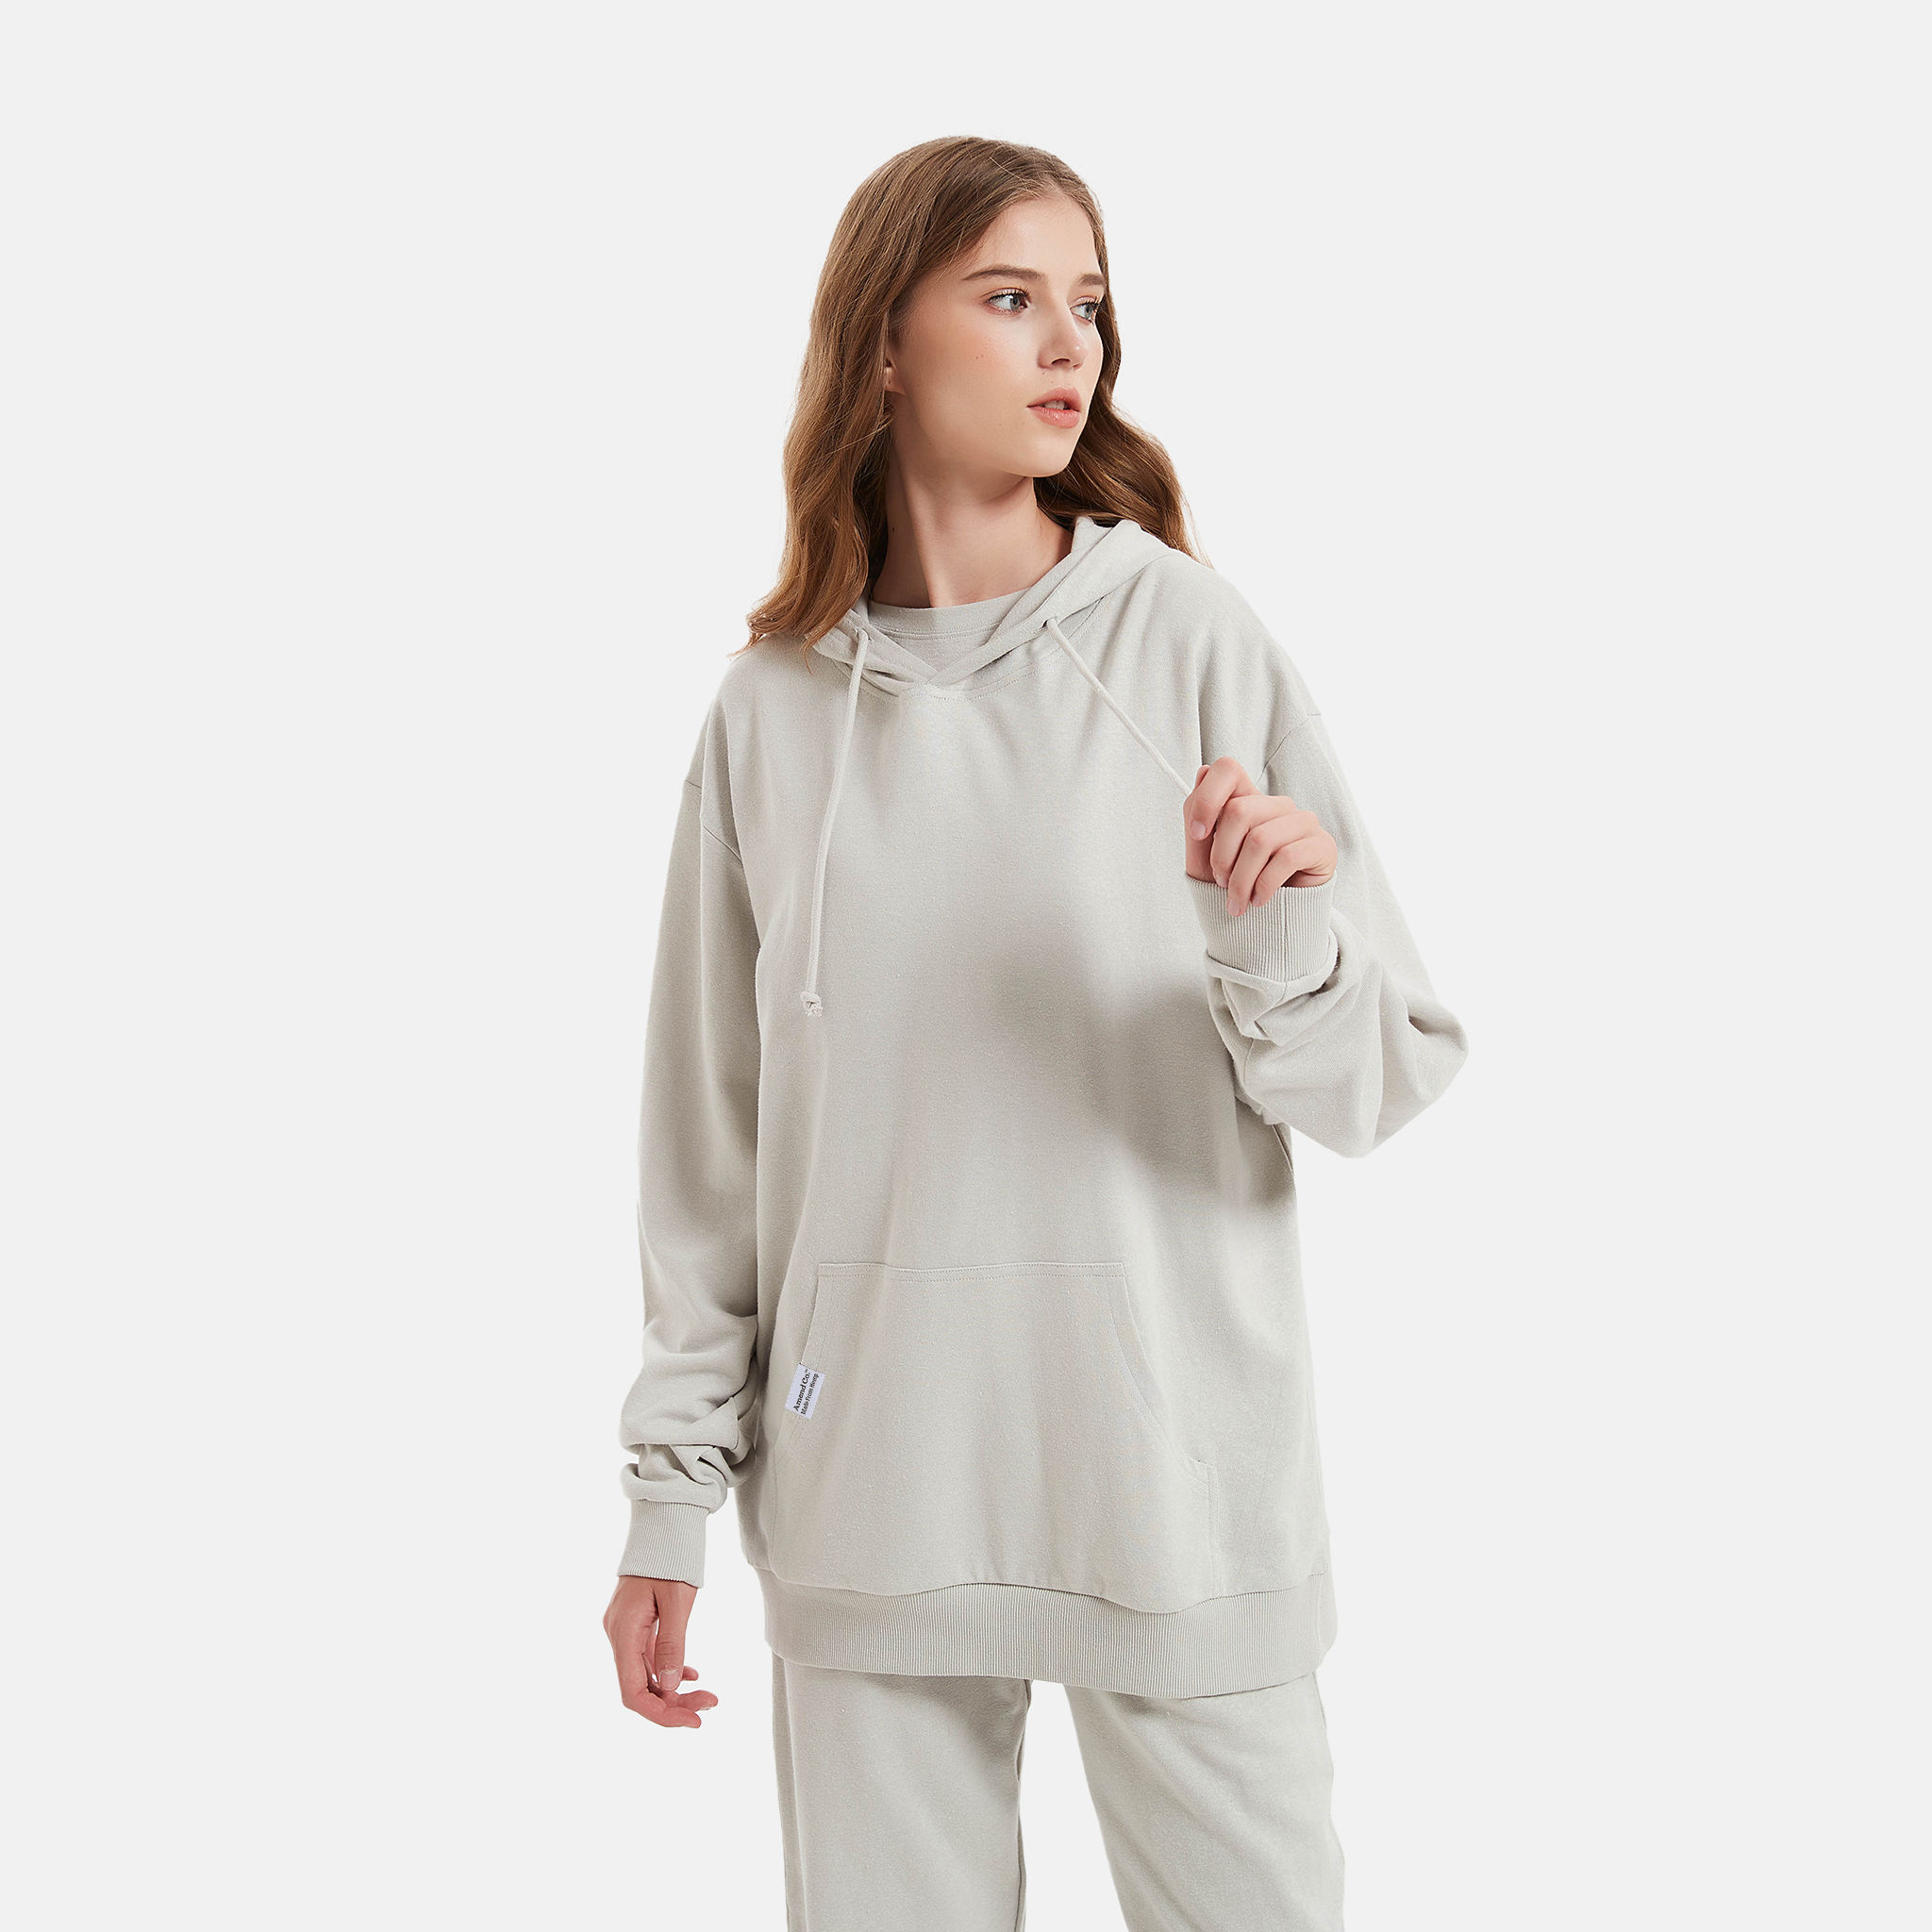 Organic gray hoodie, eco-friendly fashion option, Unisex